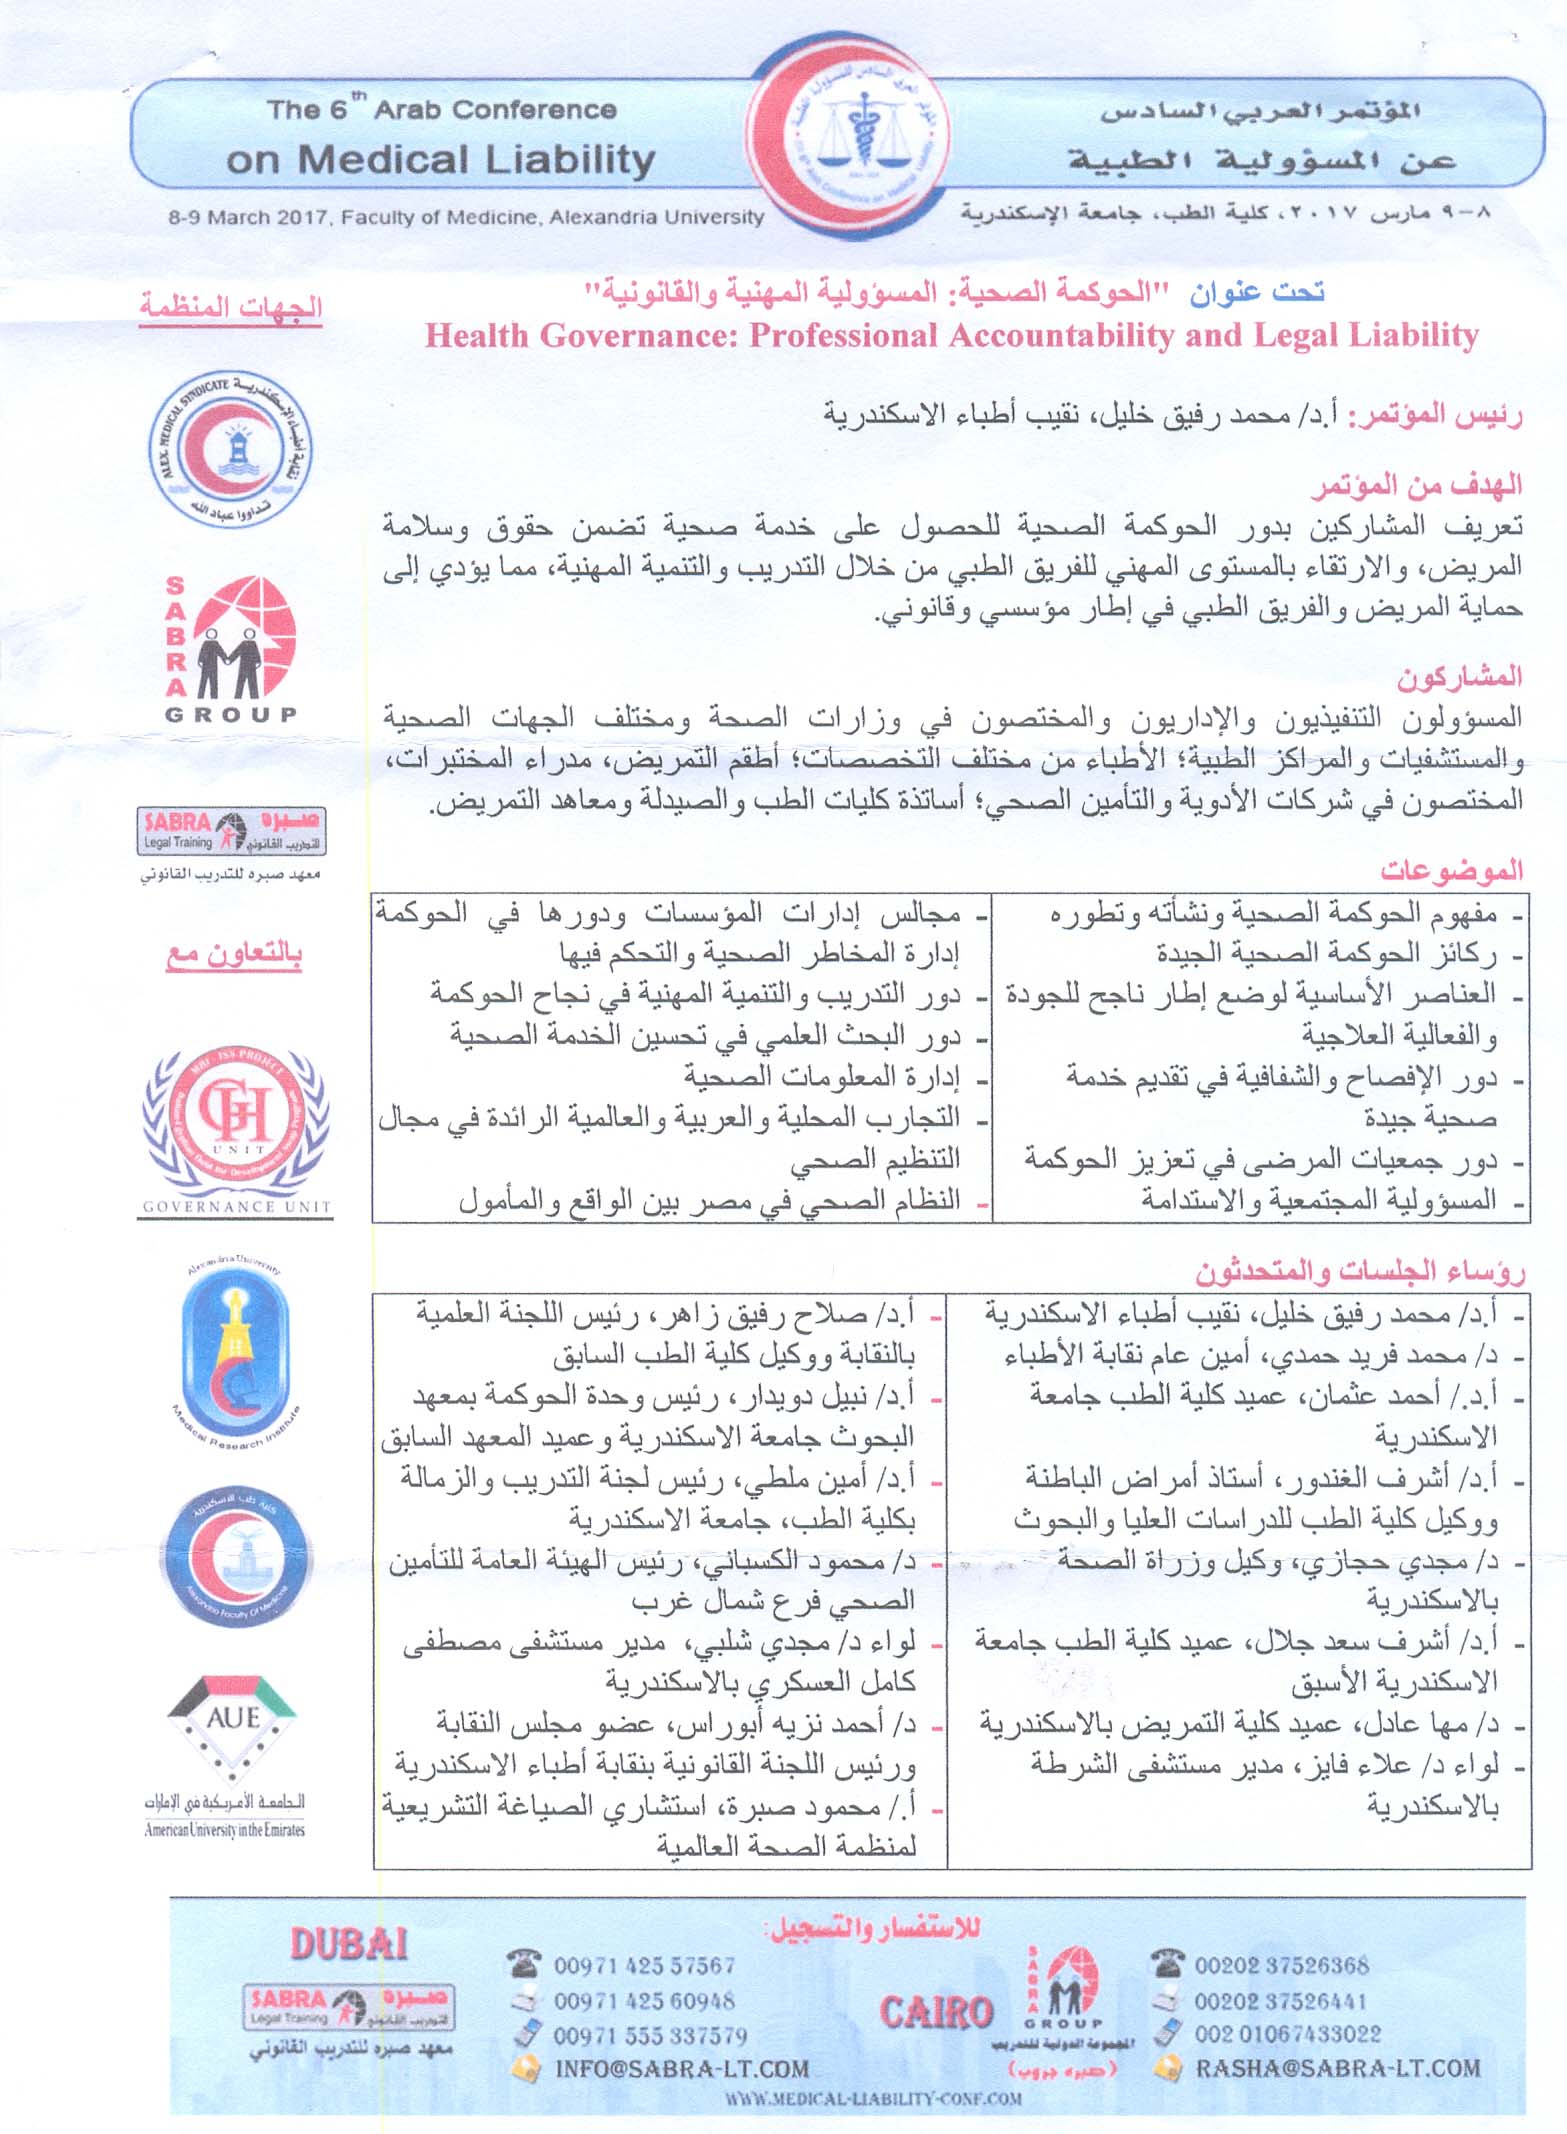 المؤتمر العربي السادس عن  الحوكمة الصحية والمسؤولية المهنية والقانونية